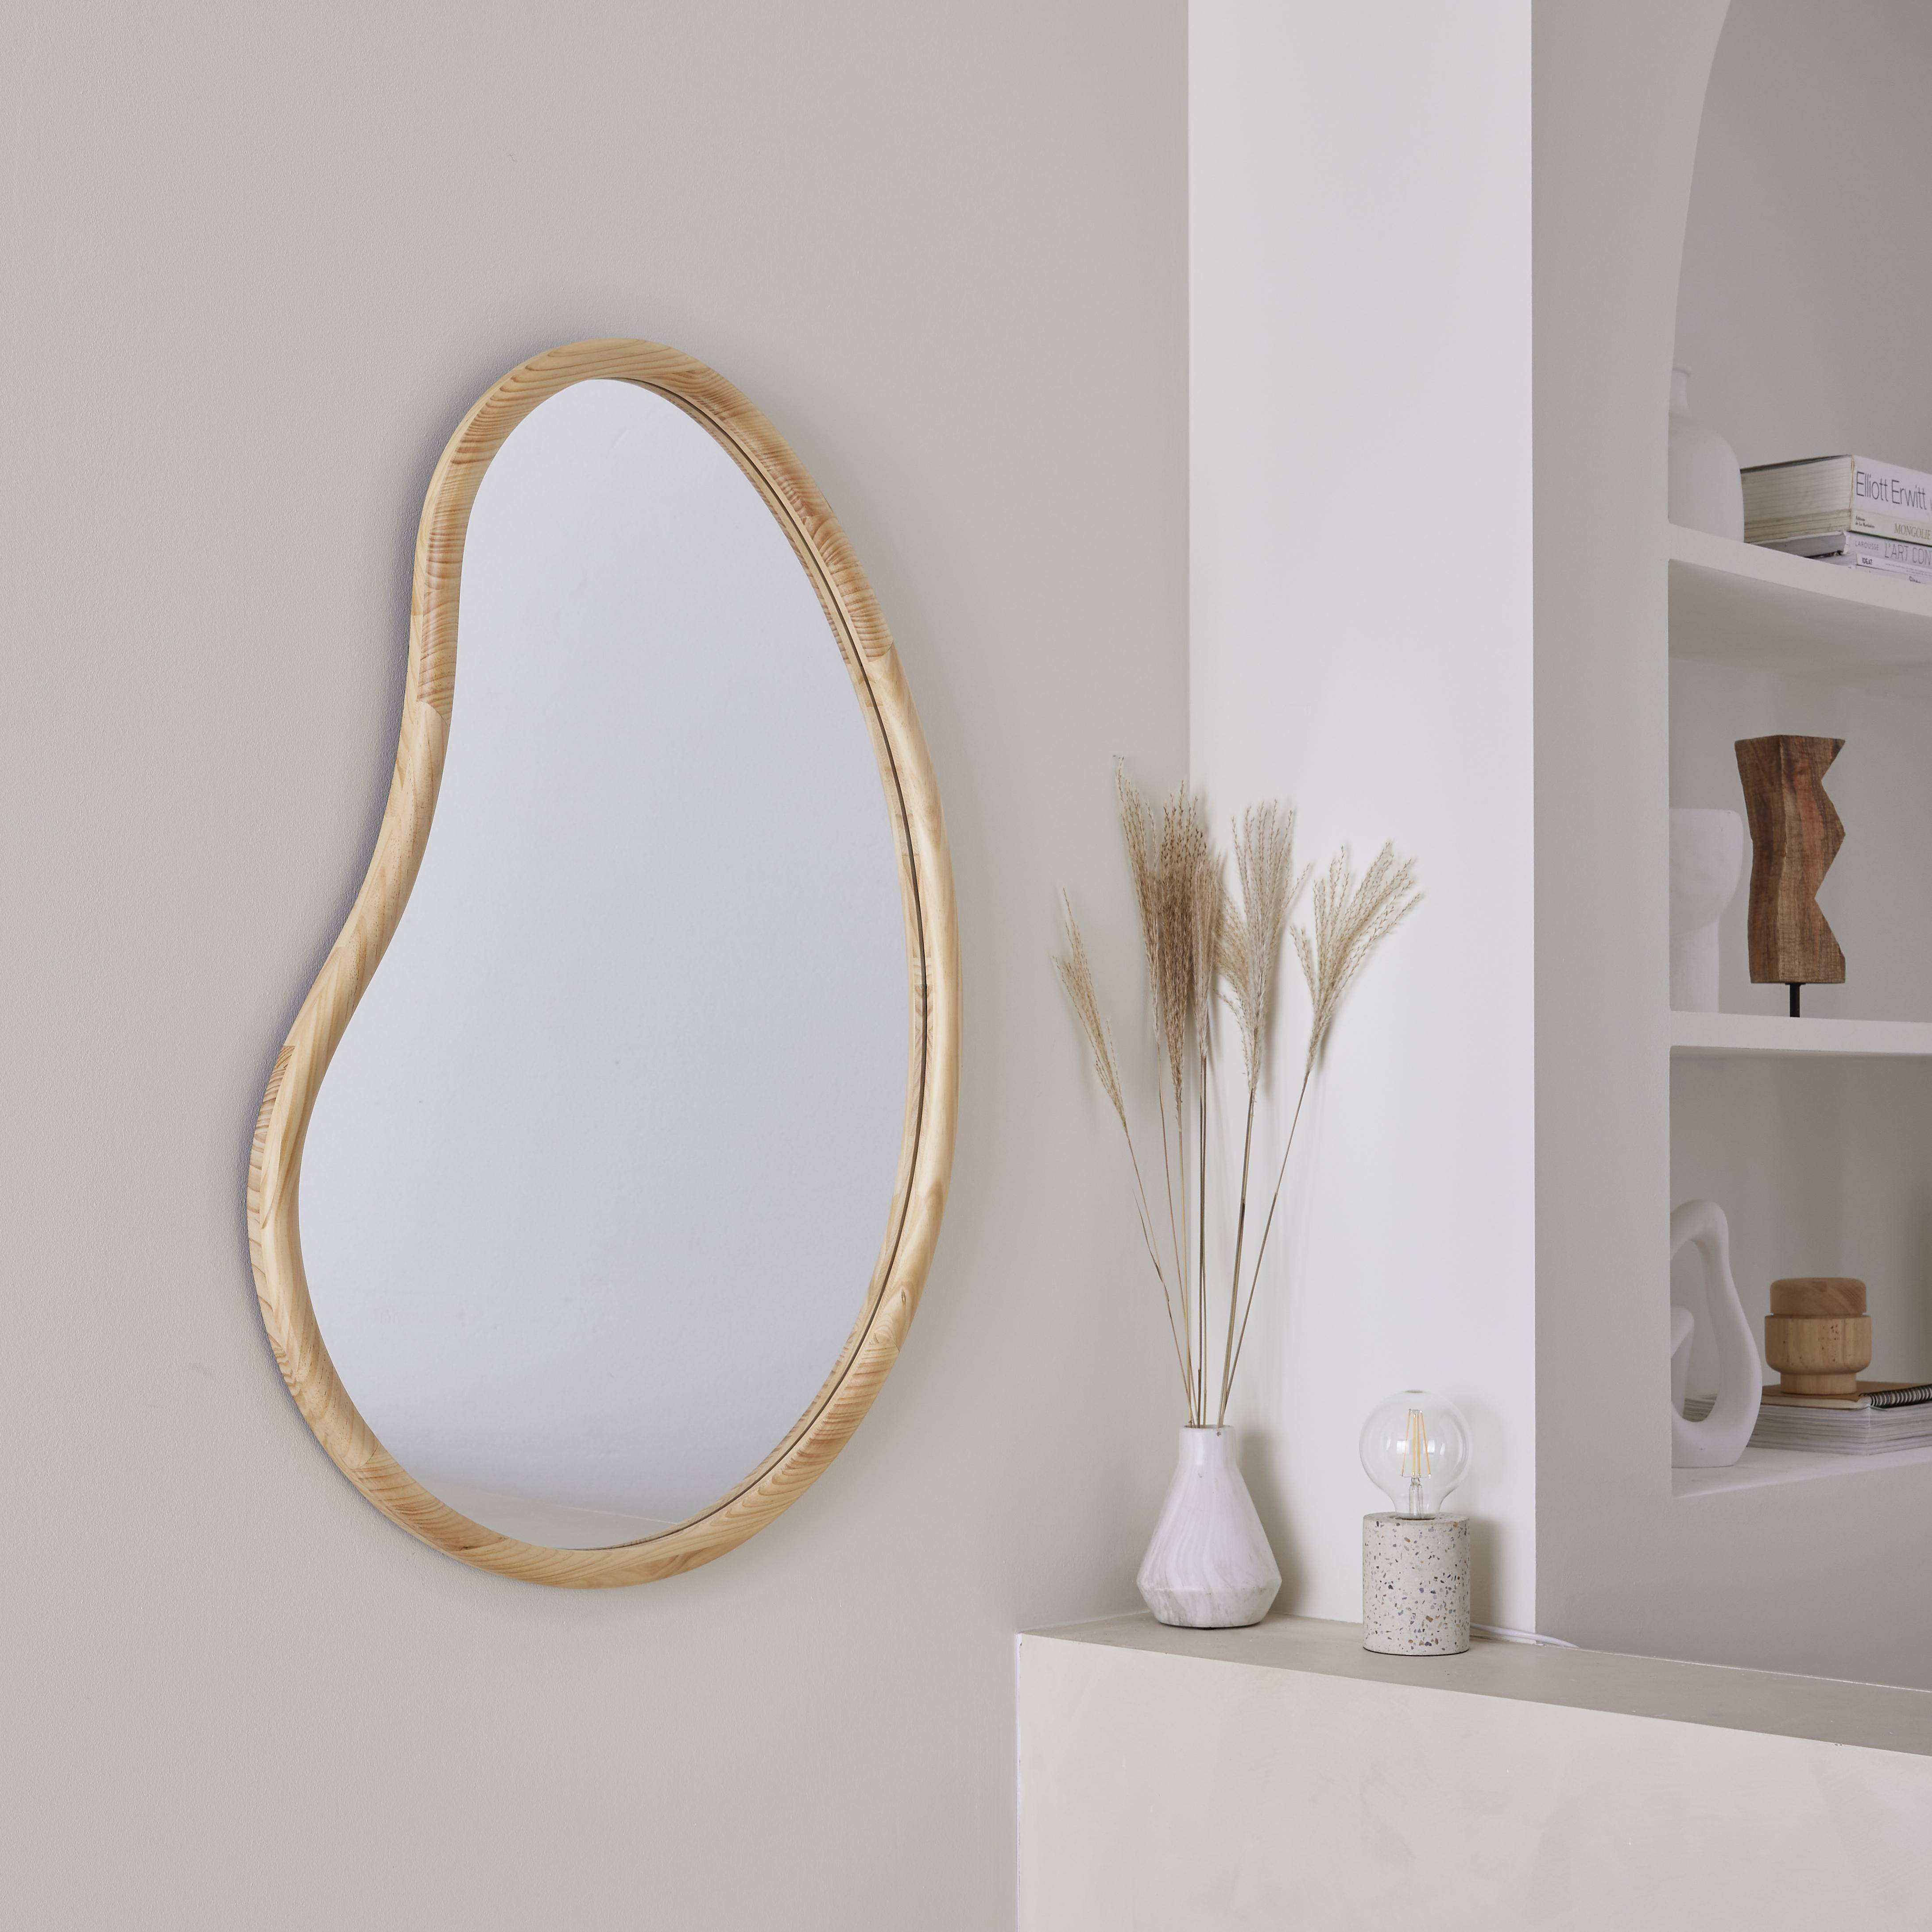 Organischer Spiegel aus Tannenholz 95cm, 3cm dick, naturfarben, für Eingang, Schlafzimmer oder Badezimmer - Jacob,sweeek,Photo1